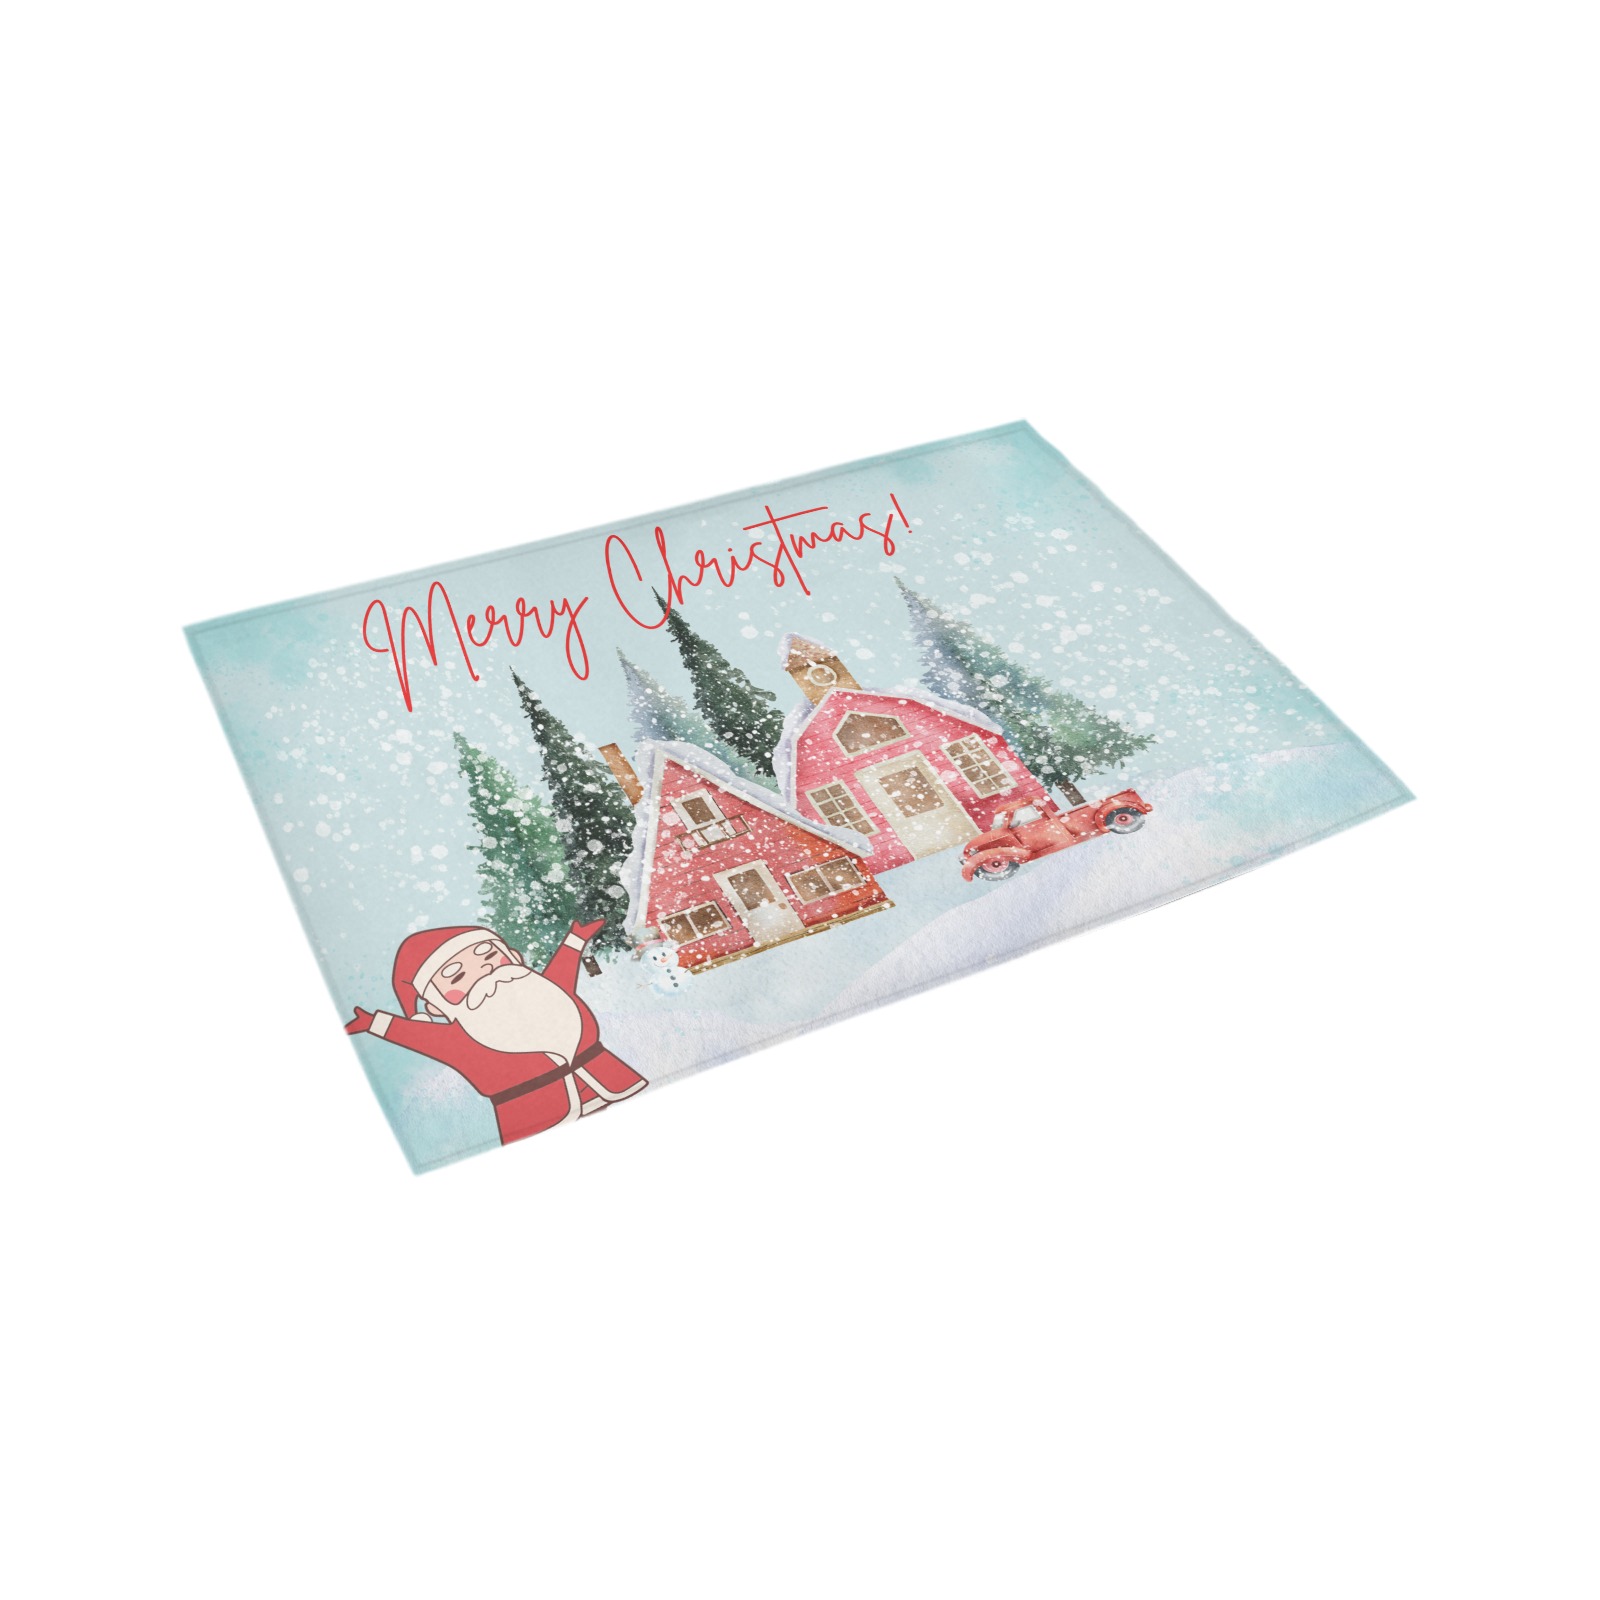 Merry Christmas Azalea Doormat 24" x 16" (Sponge Material)